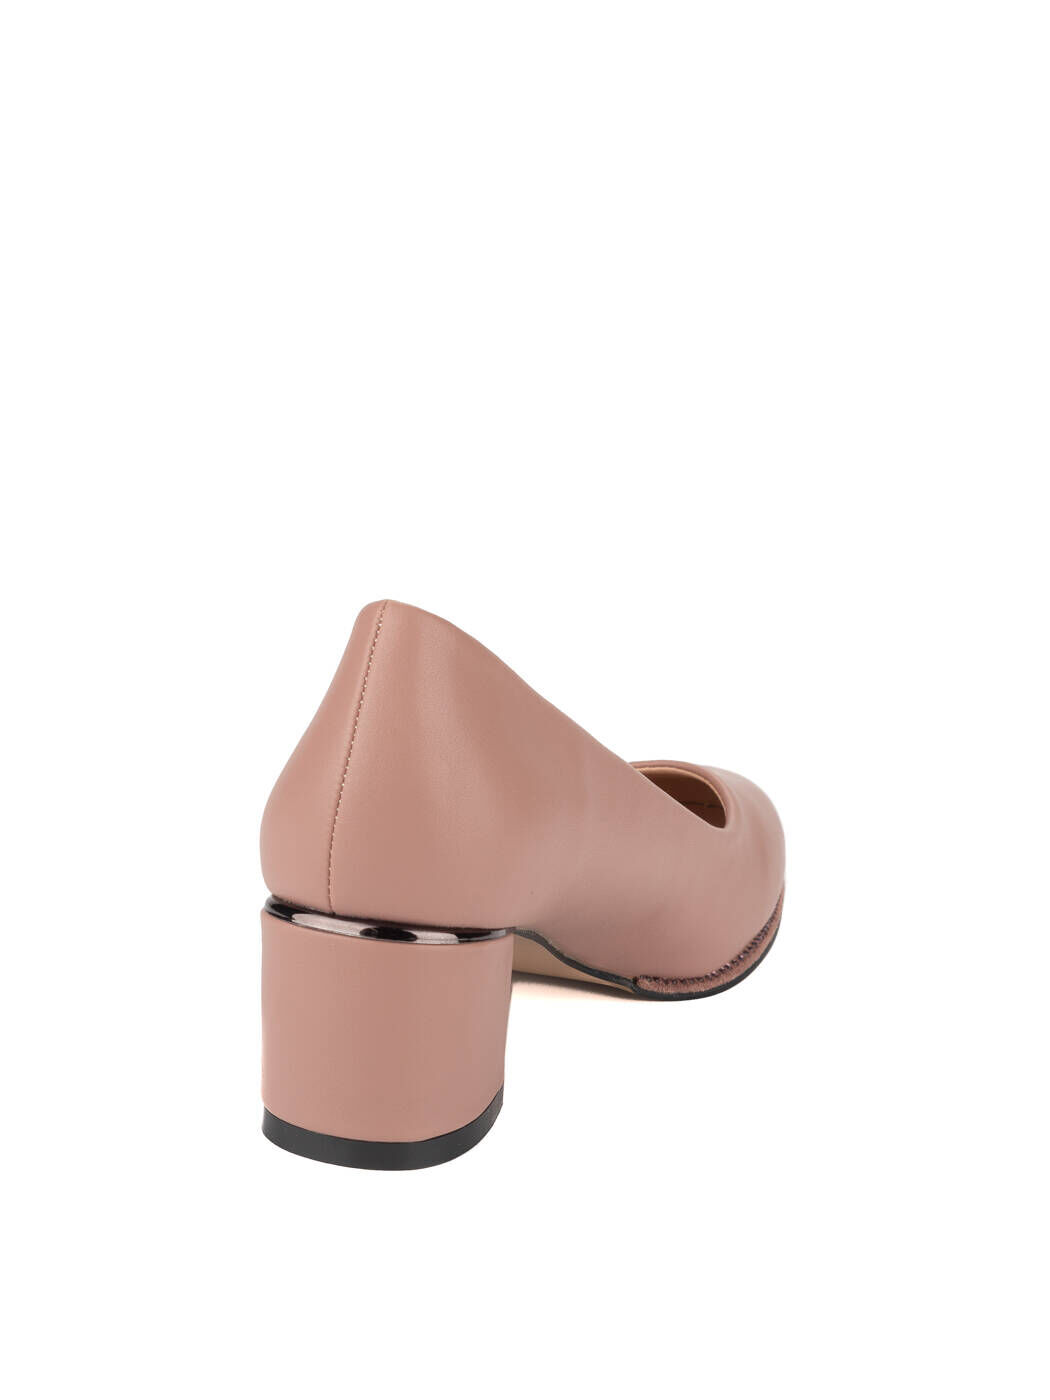 Туфли женские розовые экокожа каблук устойчивый демисезон GM вид 1